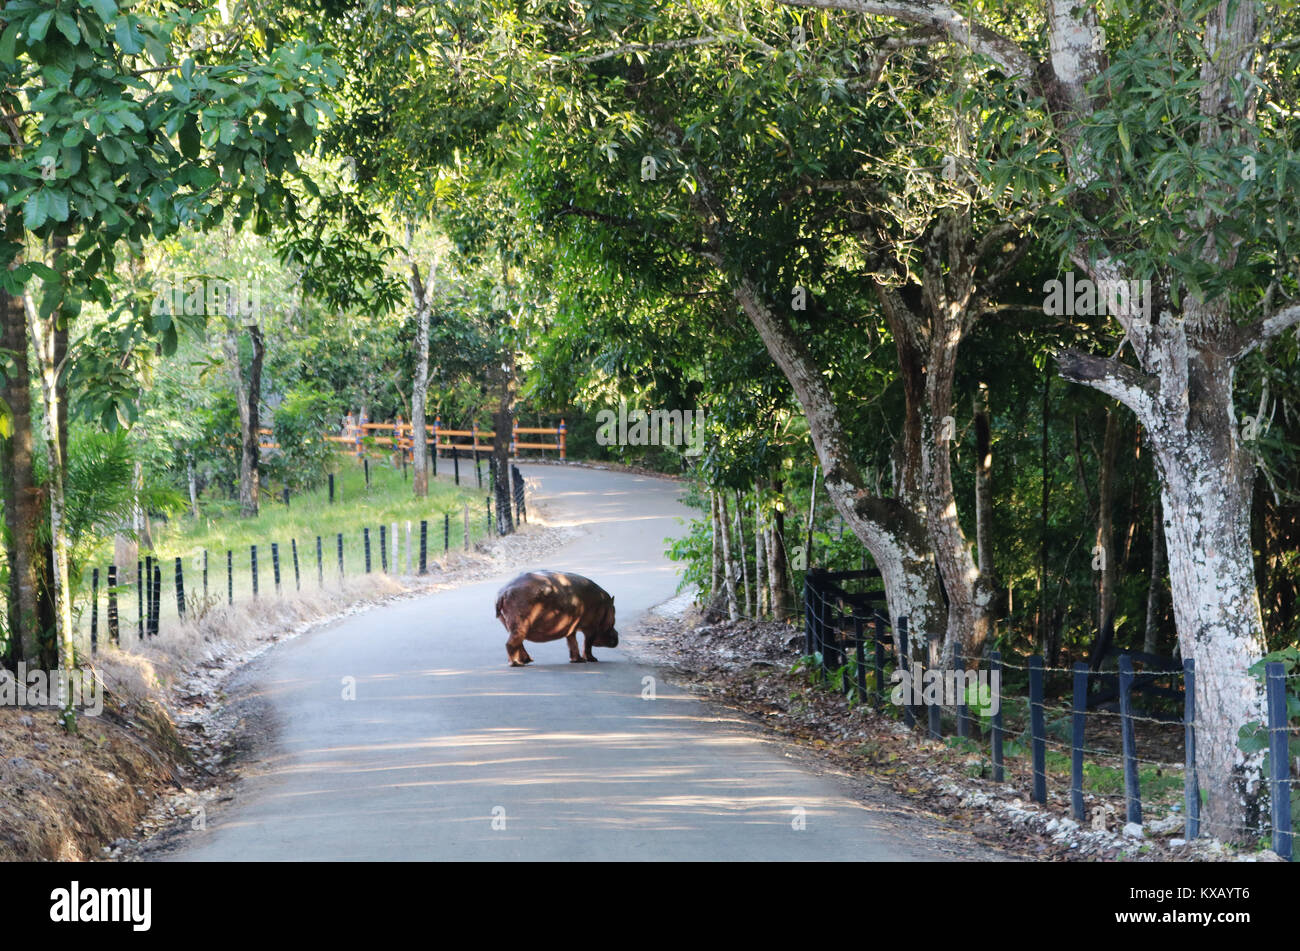 El Hippo está en la calle, en la Hacienda Nápoles, Colombia, 07 de  diciembre de 2017. La Hacienda perteneció al narcotraficante Pablo Escobar,  quienes establecieron un zoológico privado aquí. Hippo Vanessa tiene